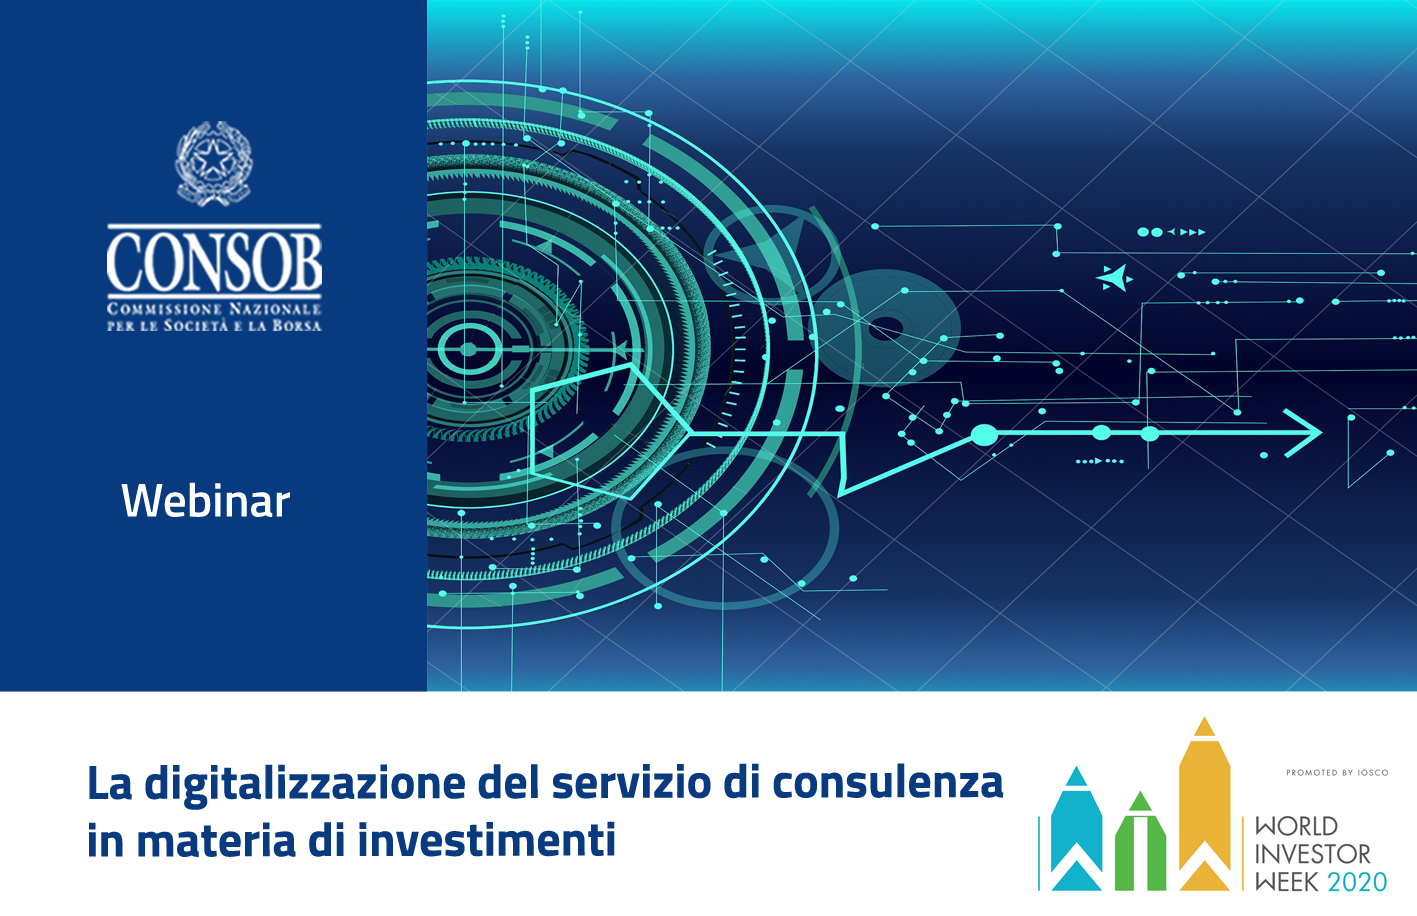 La digitalizzazione del servizio di consulenza in materia di investimenti